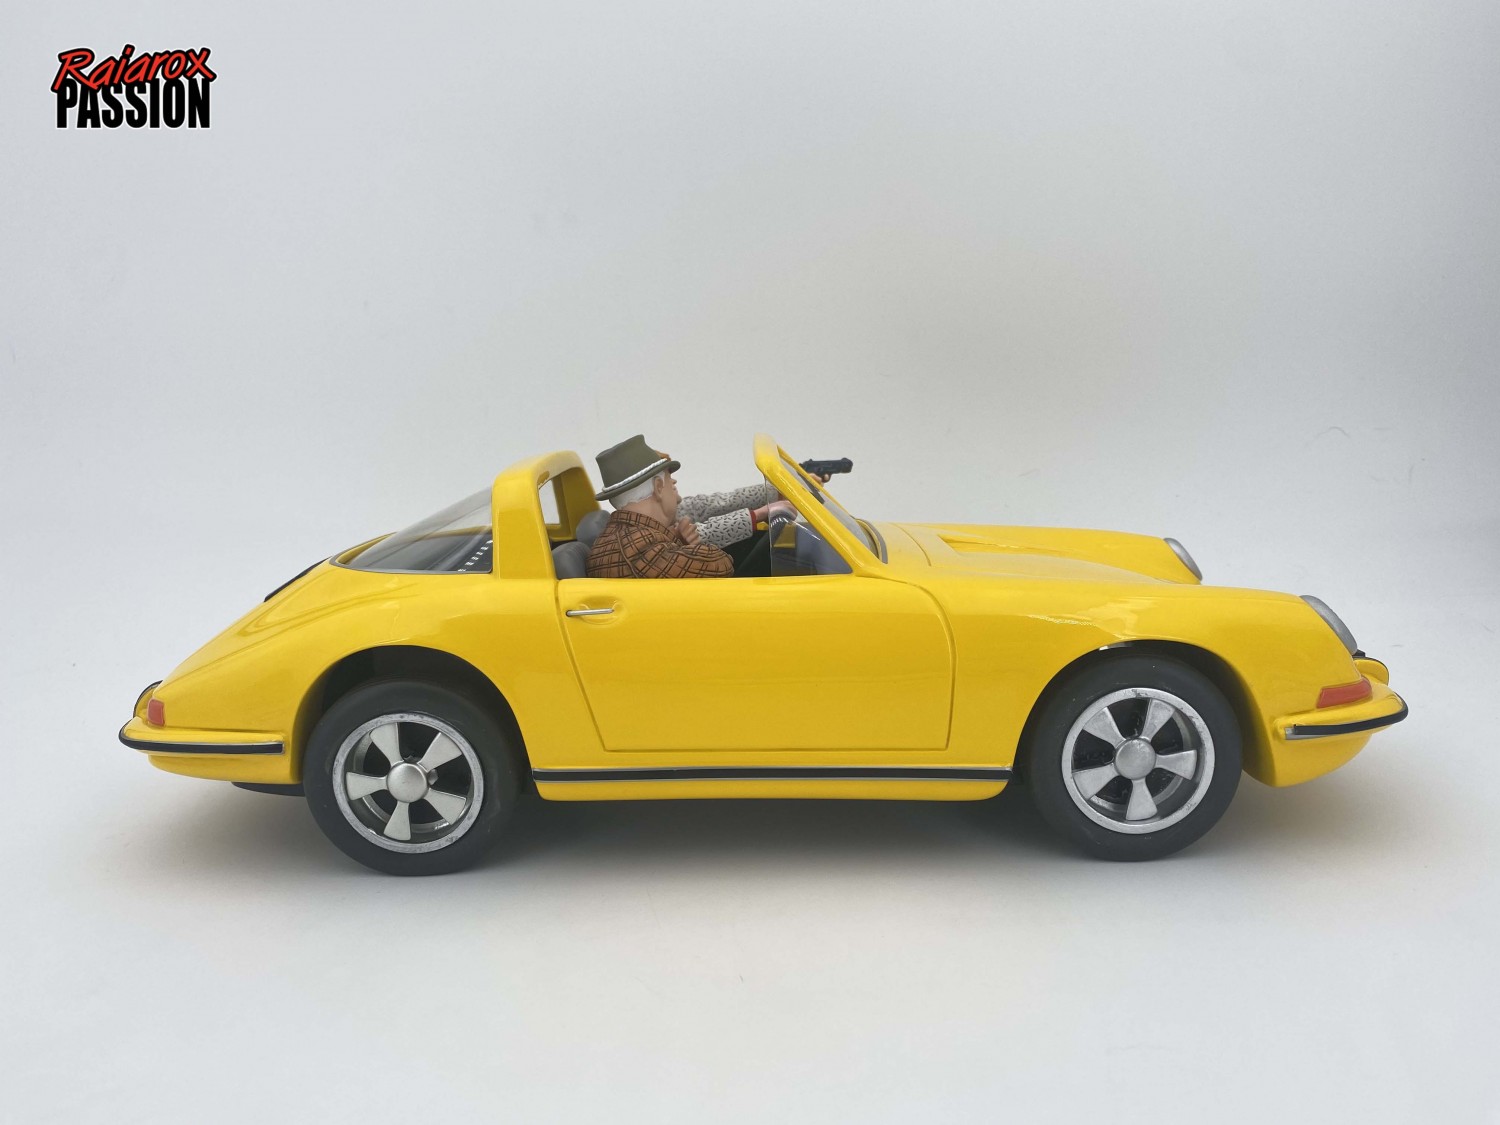 Ric Hochet -Porsche 911 Carrera Targa jaune